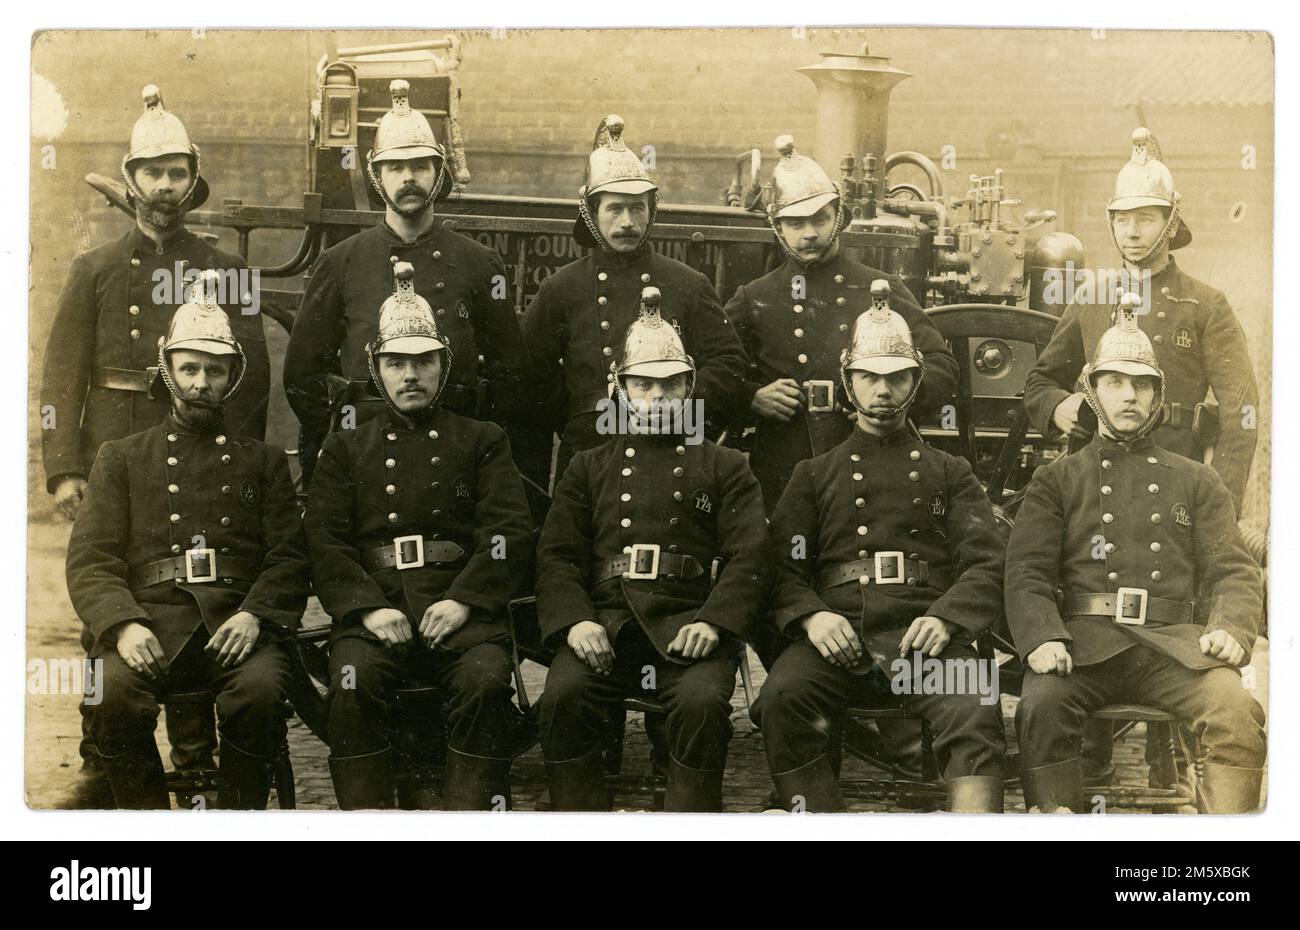 Carte postale originale de l'époque Edwardienne de l'équipage et de l'équipe de la Metropolitan Fire Brigade (MFB) du London County Council, Sunbury Street, Woolwich, en poste le 18 mars 1905 à Woolwich, dans le sud-est de Londres, au Royaume-Uni Banque D'Images